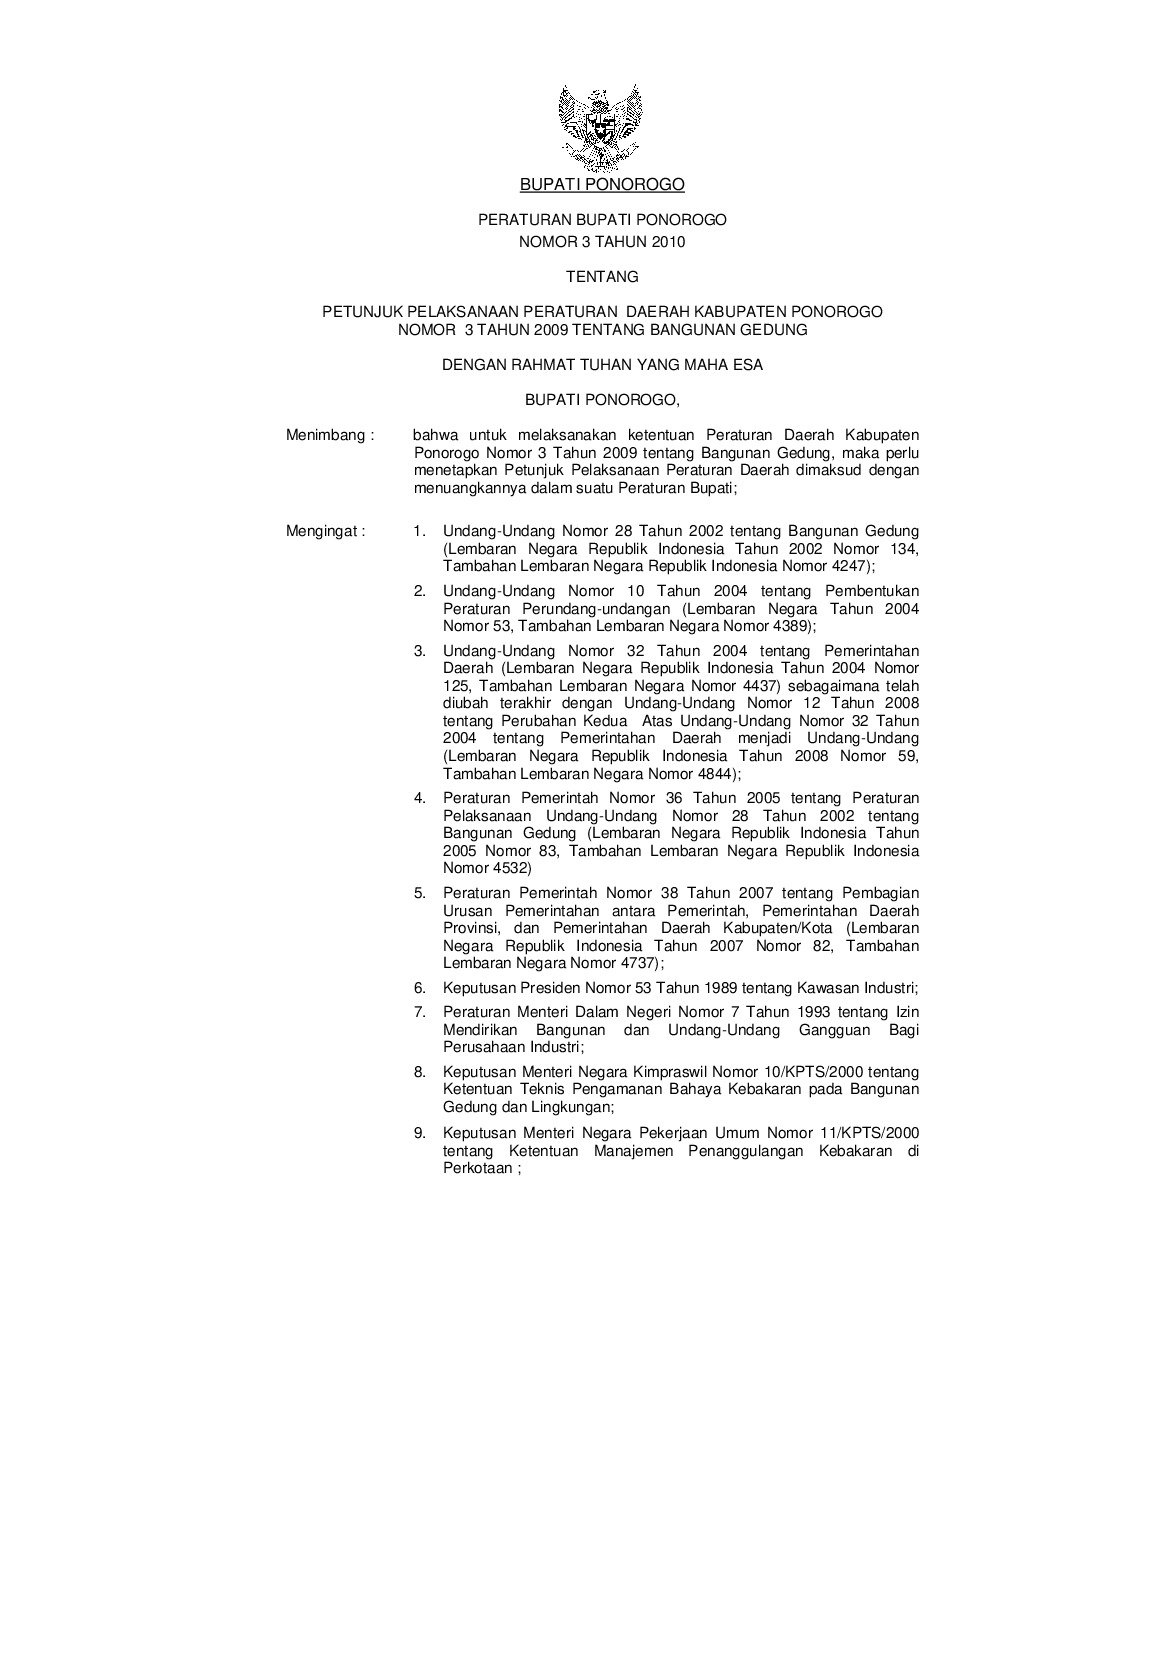 Peraturan Bupati Ponorogo No 3 tahun 2010 tentang Petunjuk Pelaksanaan Peraturan Daerah Kabupaten Ponorogo Nomor 3 Tahun 2009 Tentang Bangunan Gedung